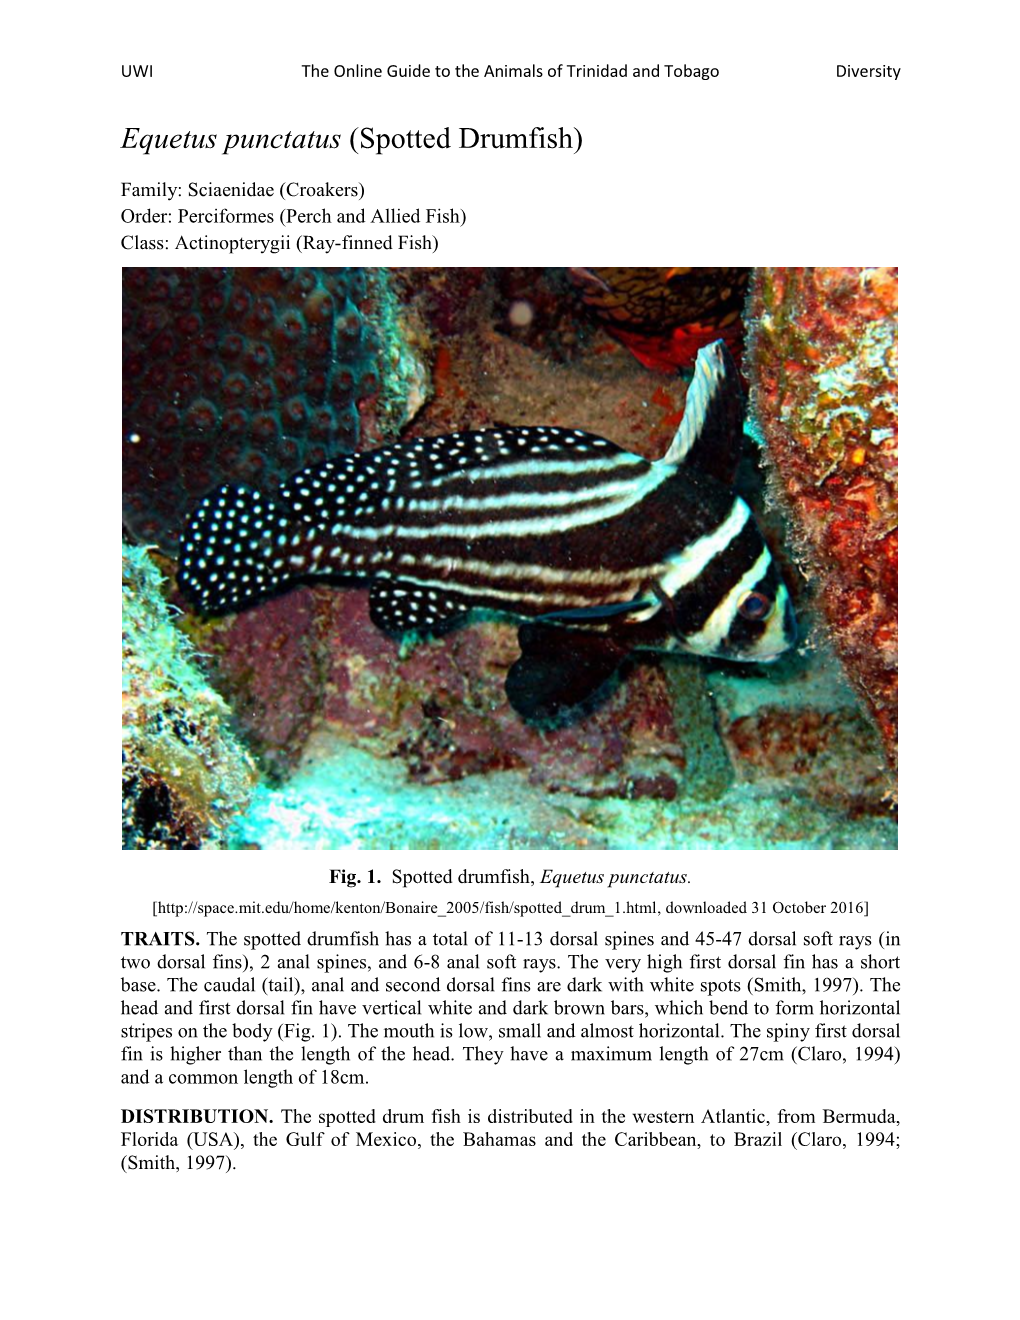 Equetus Punctatus (Spotted Drumfish)